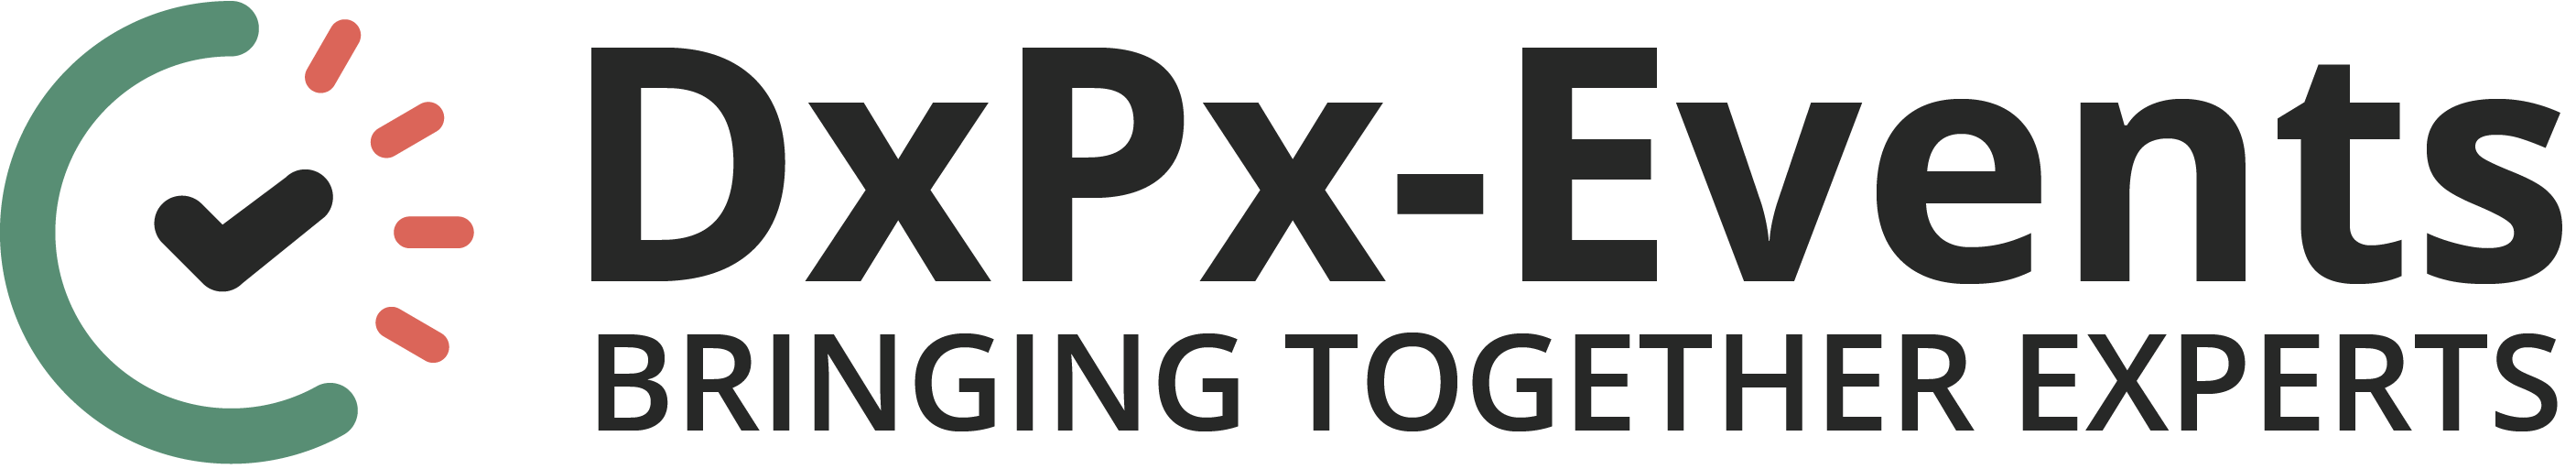 dxpx events logo